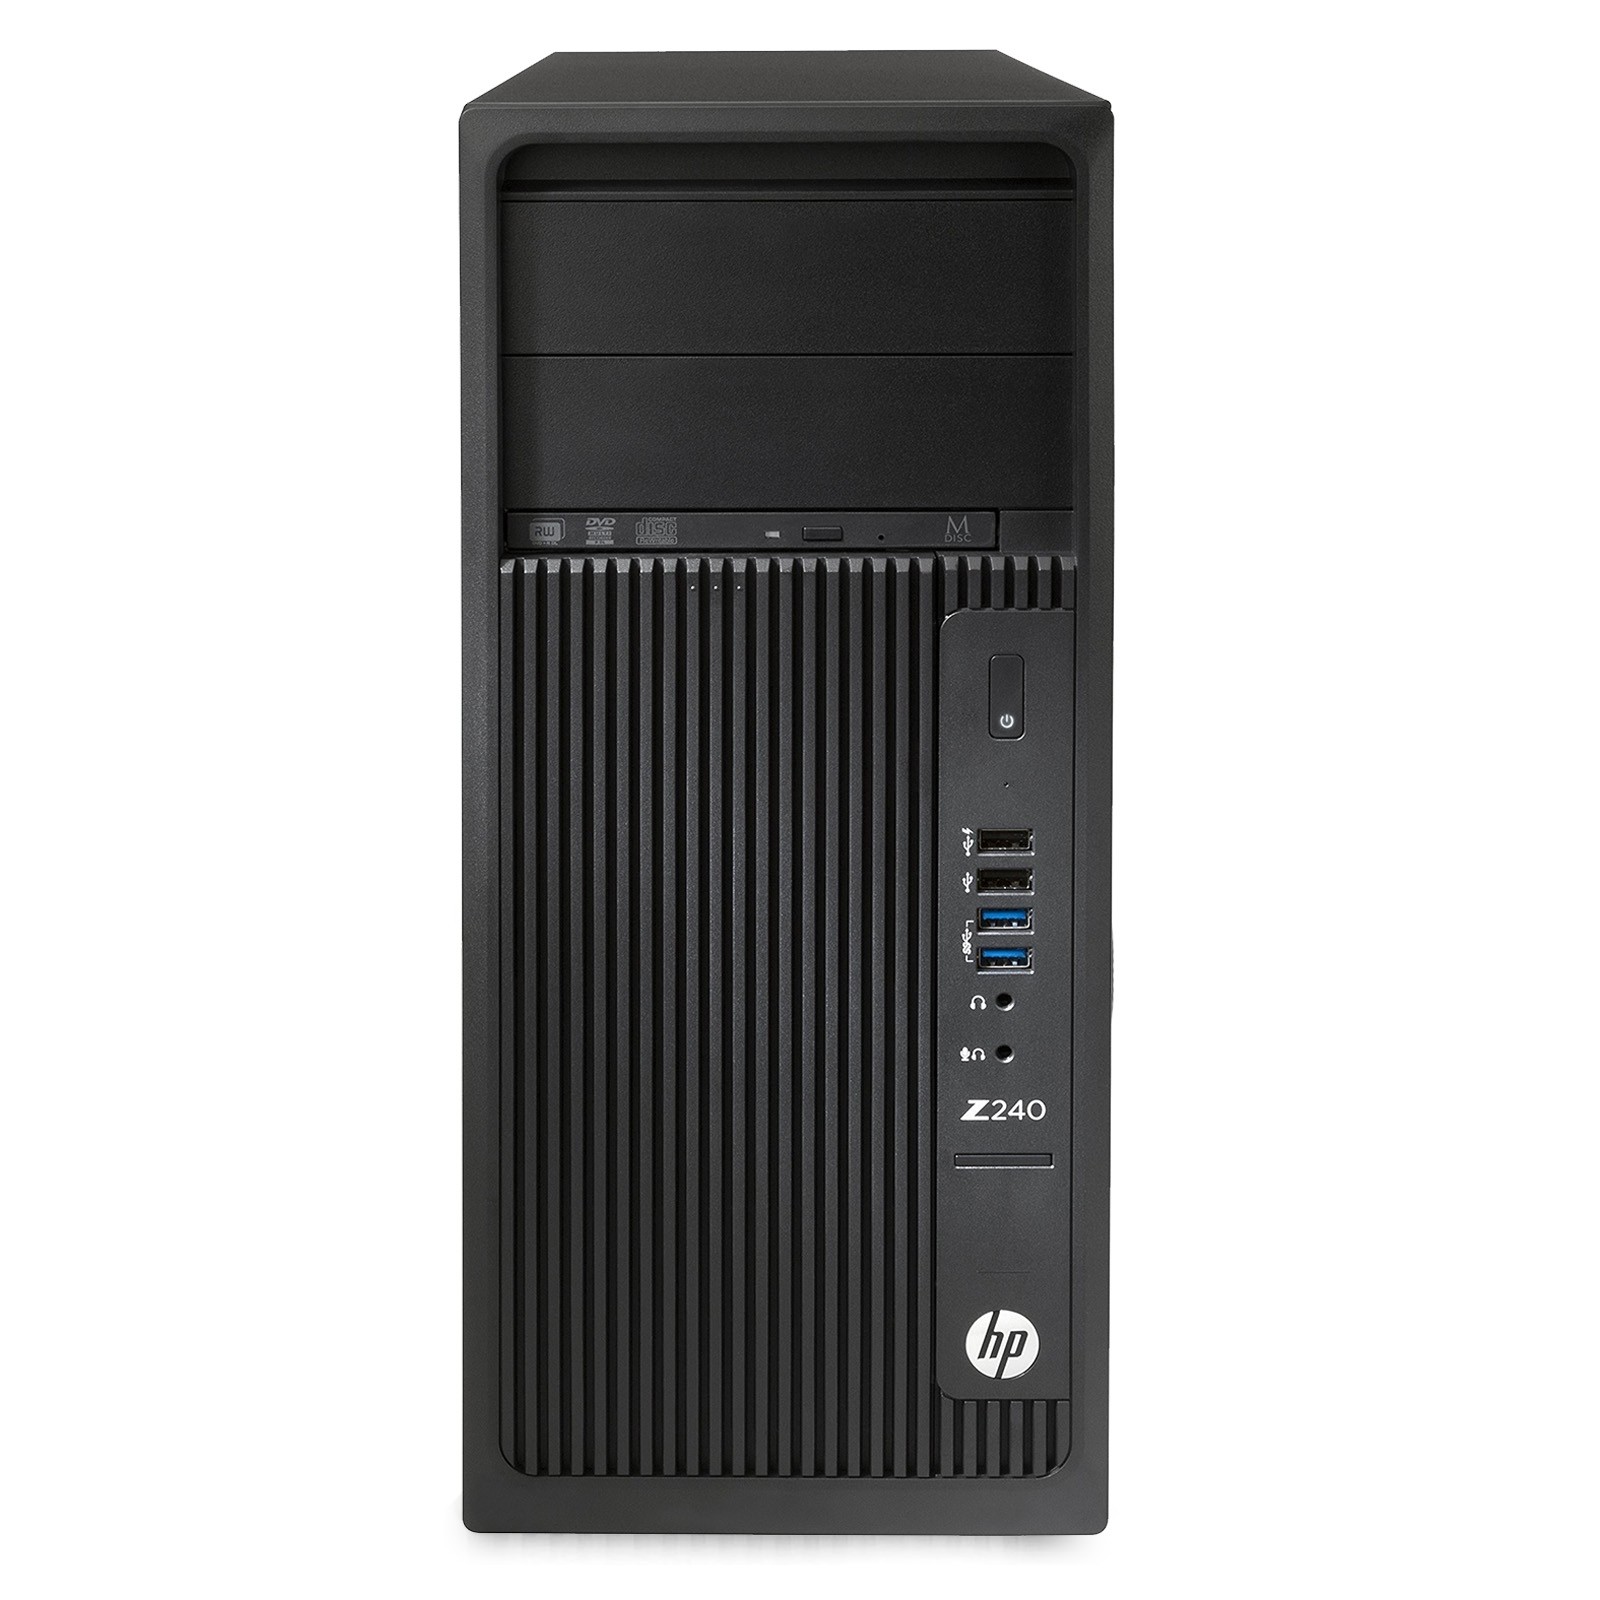 HP Z240 Xeon Workstation